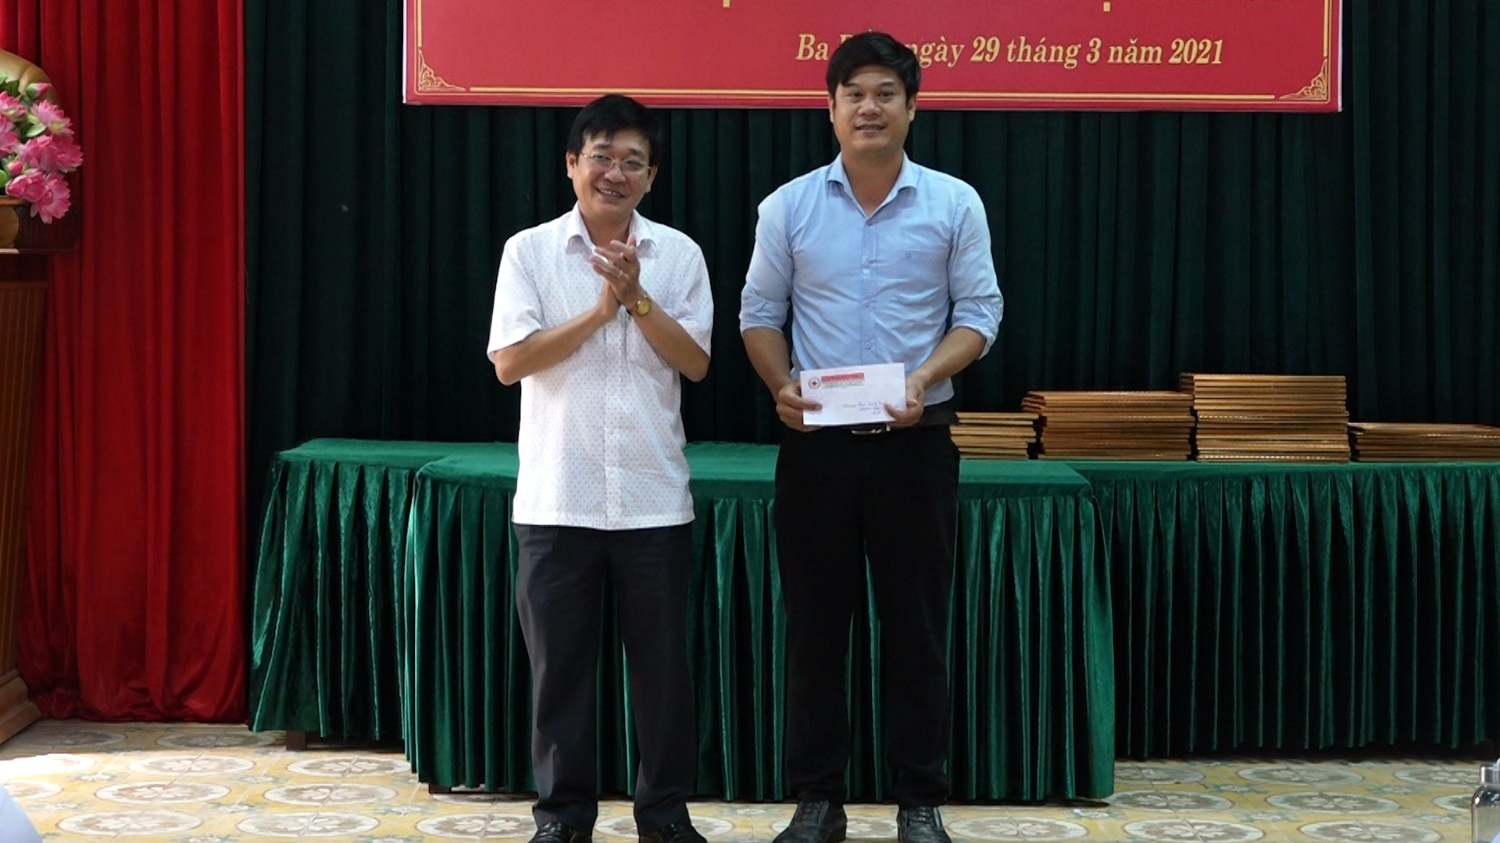 2 Ban chỉ đạo Quốc gia vận động HMTN tặng phù hiệu 20 lần HMTN cho anh Phạm Quang Trung UBND xã Quảng Lộc